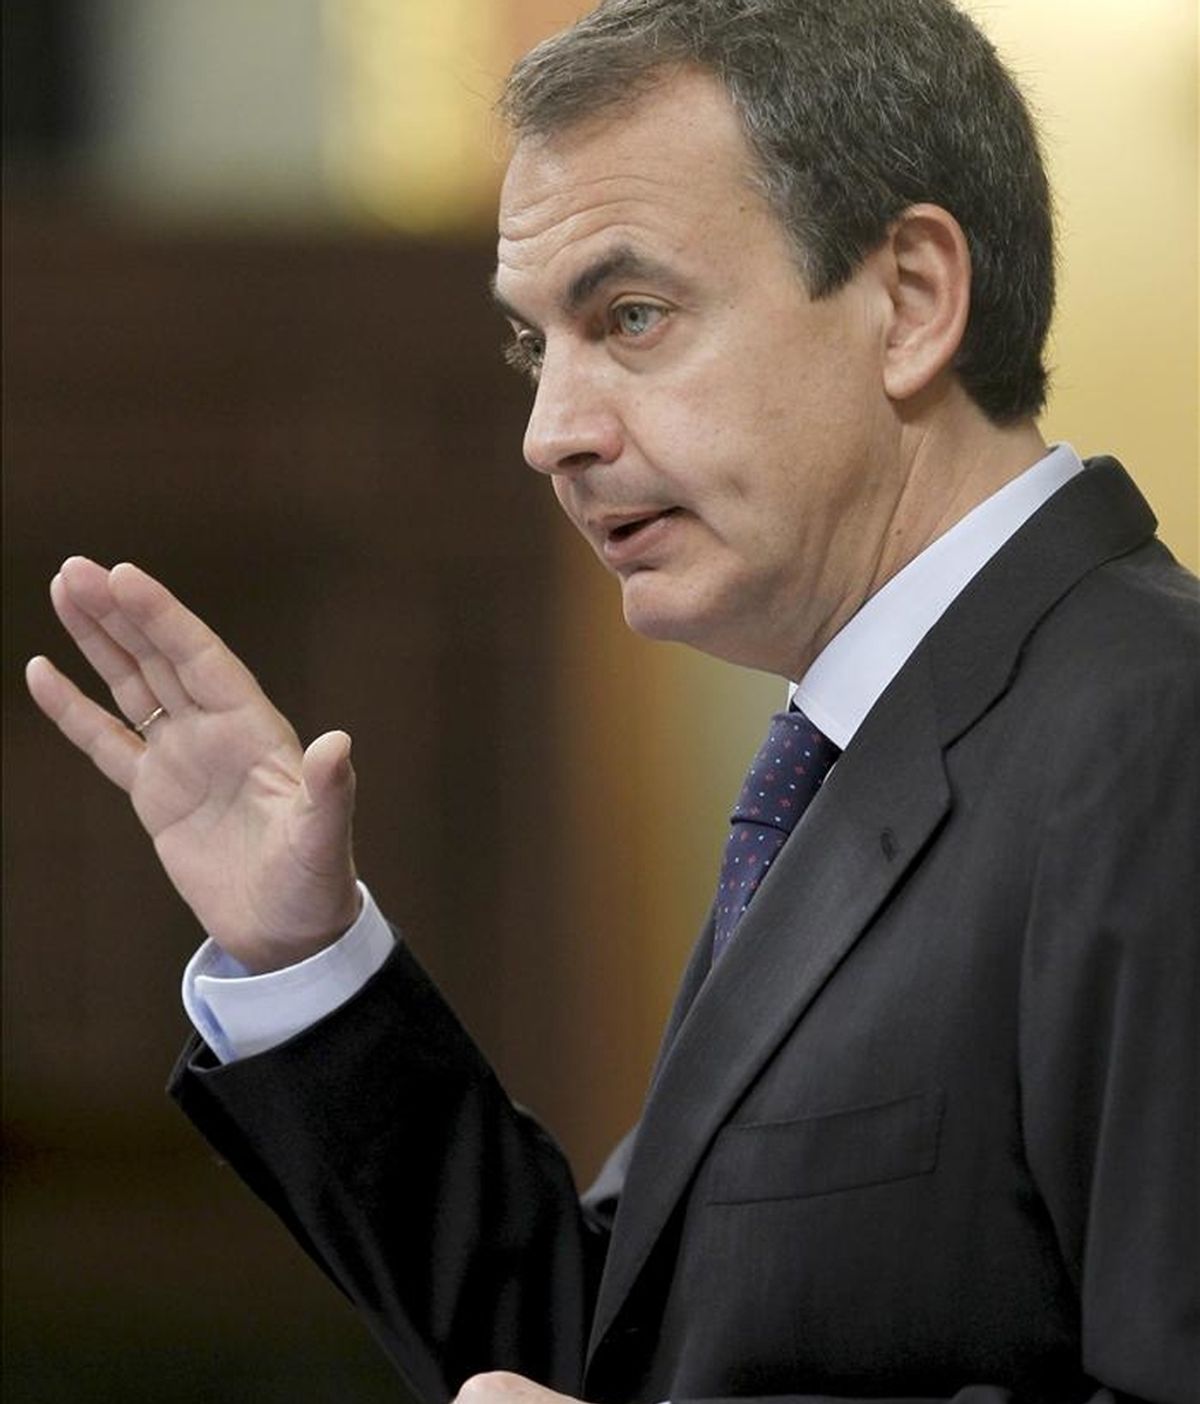 El presidente del Gobierno, José Luis Rodríguez Zapatero, durante su comparecencia hoy a petición propia ante el pleno del Congreso para informar del Consejo Europeo de Bruselas celebrado la semana pasada. EFE